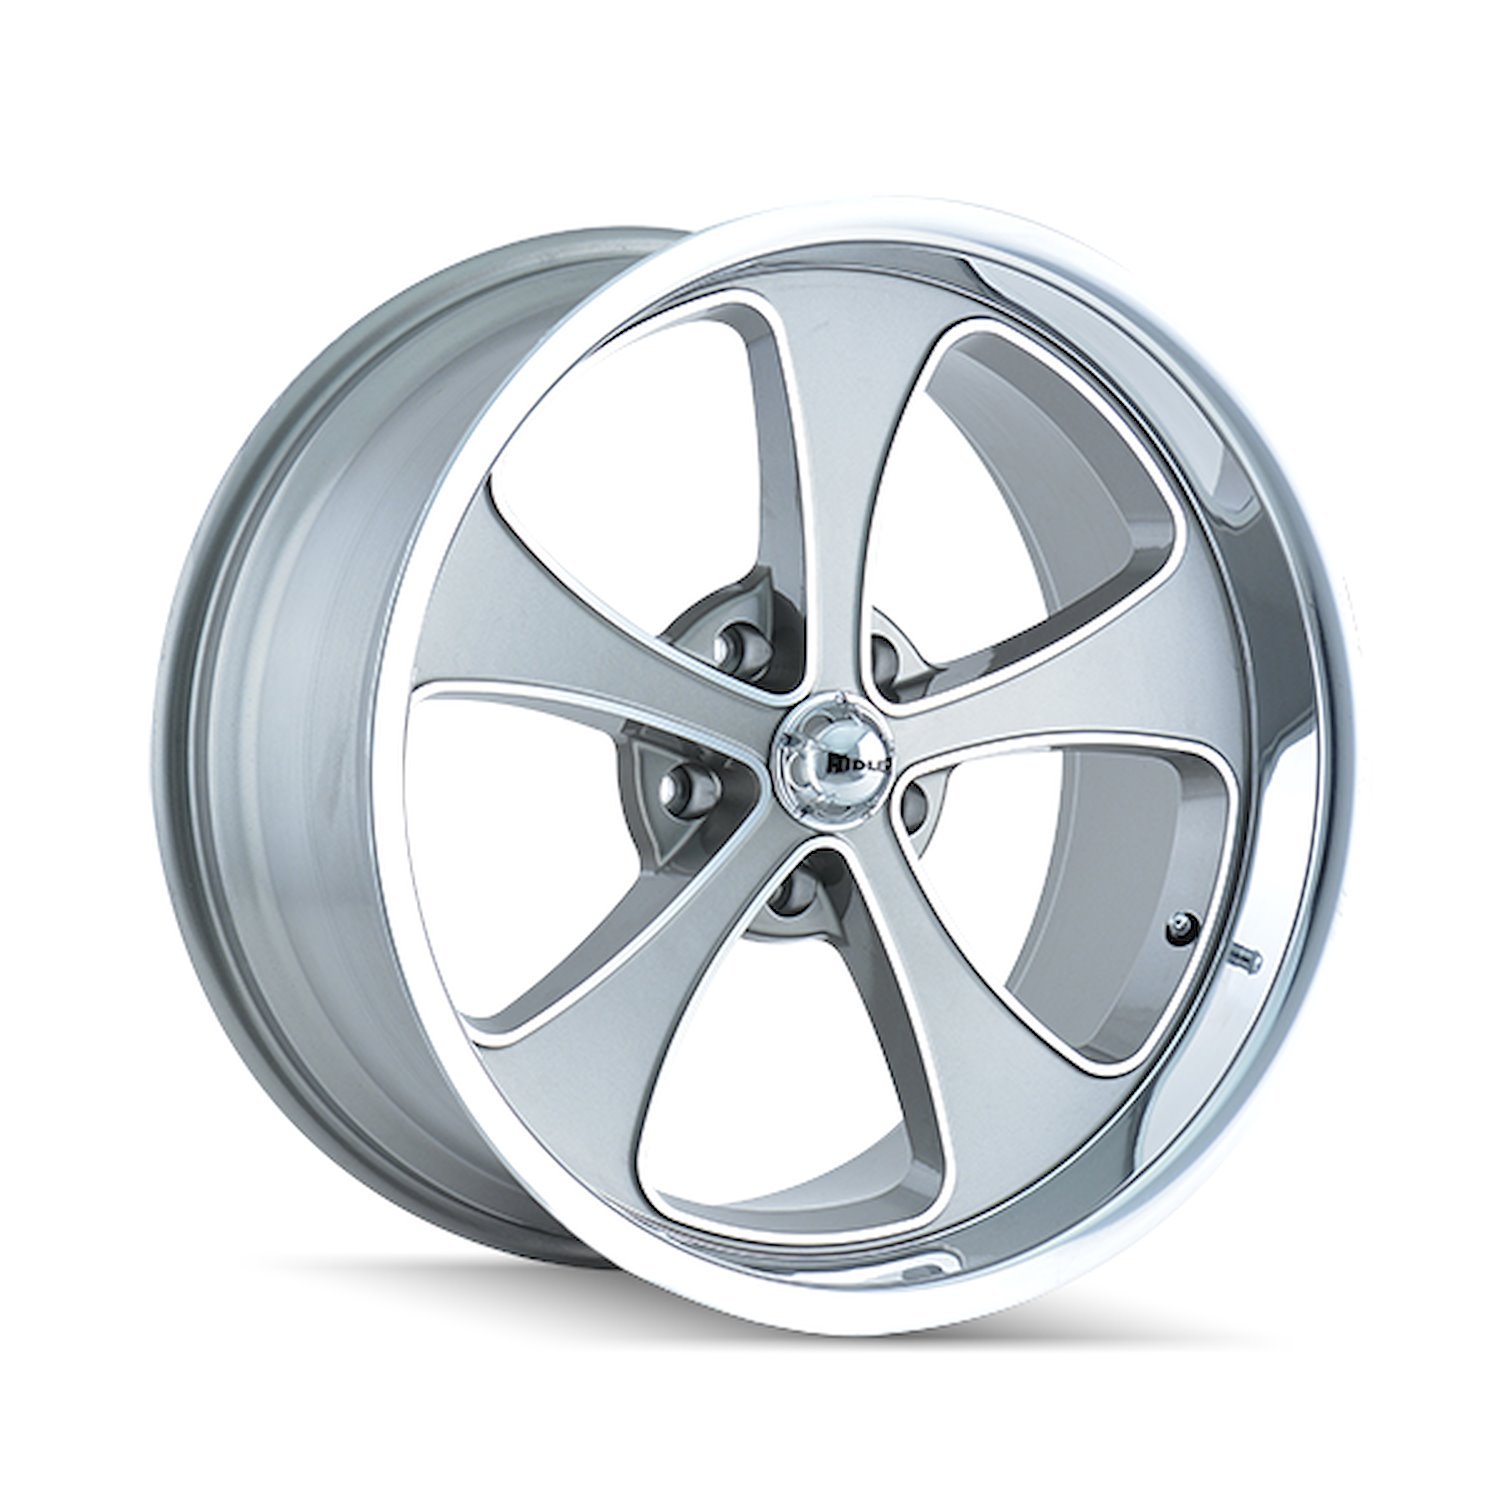 645-8873GP 645-Series Wheel [Size: 18" x 8"] Gloss Grey Machined/Polished Finish